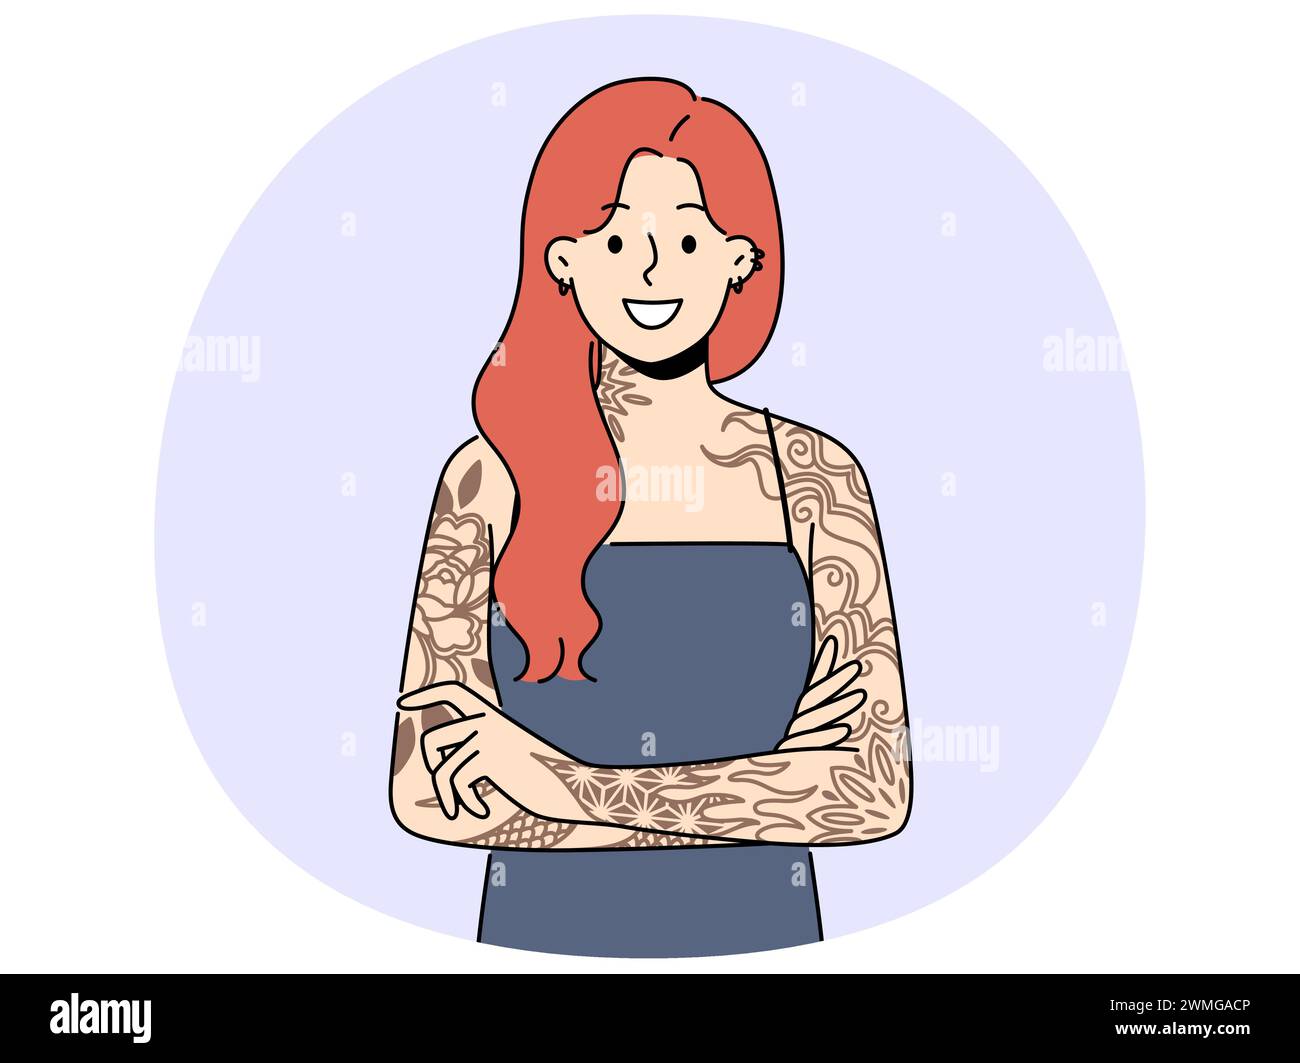 Lächelnde rothaarige Frau mit Tattoos auf den Armen. Eine glückliche Frau mit tätowierten Händen drückt Persönlichkeit aus. Subkultur und Selbstdarstellung. Vektordarstellung. Stock Vektor